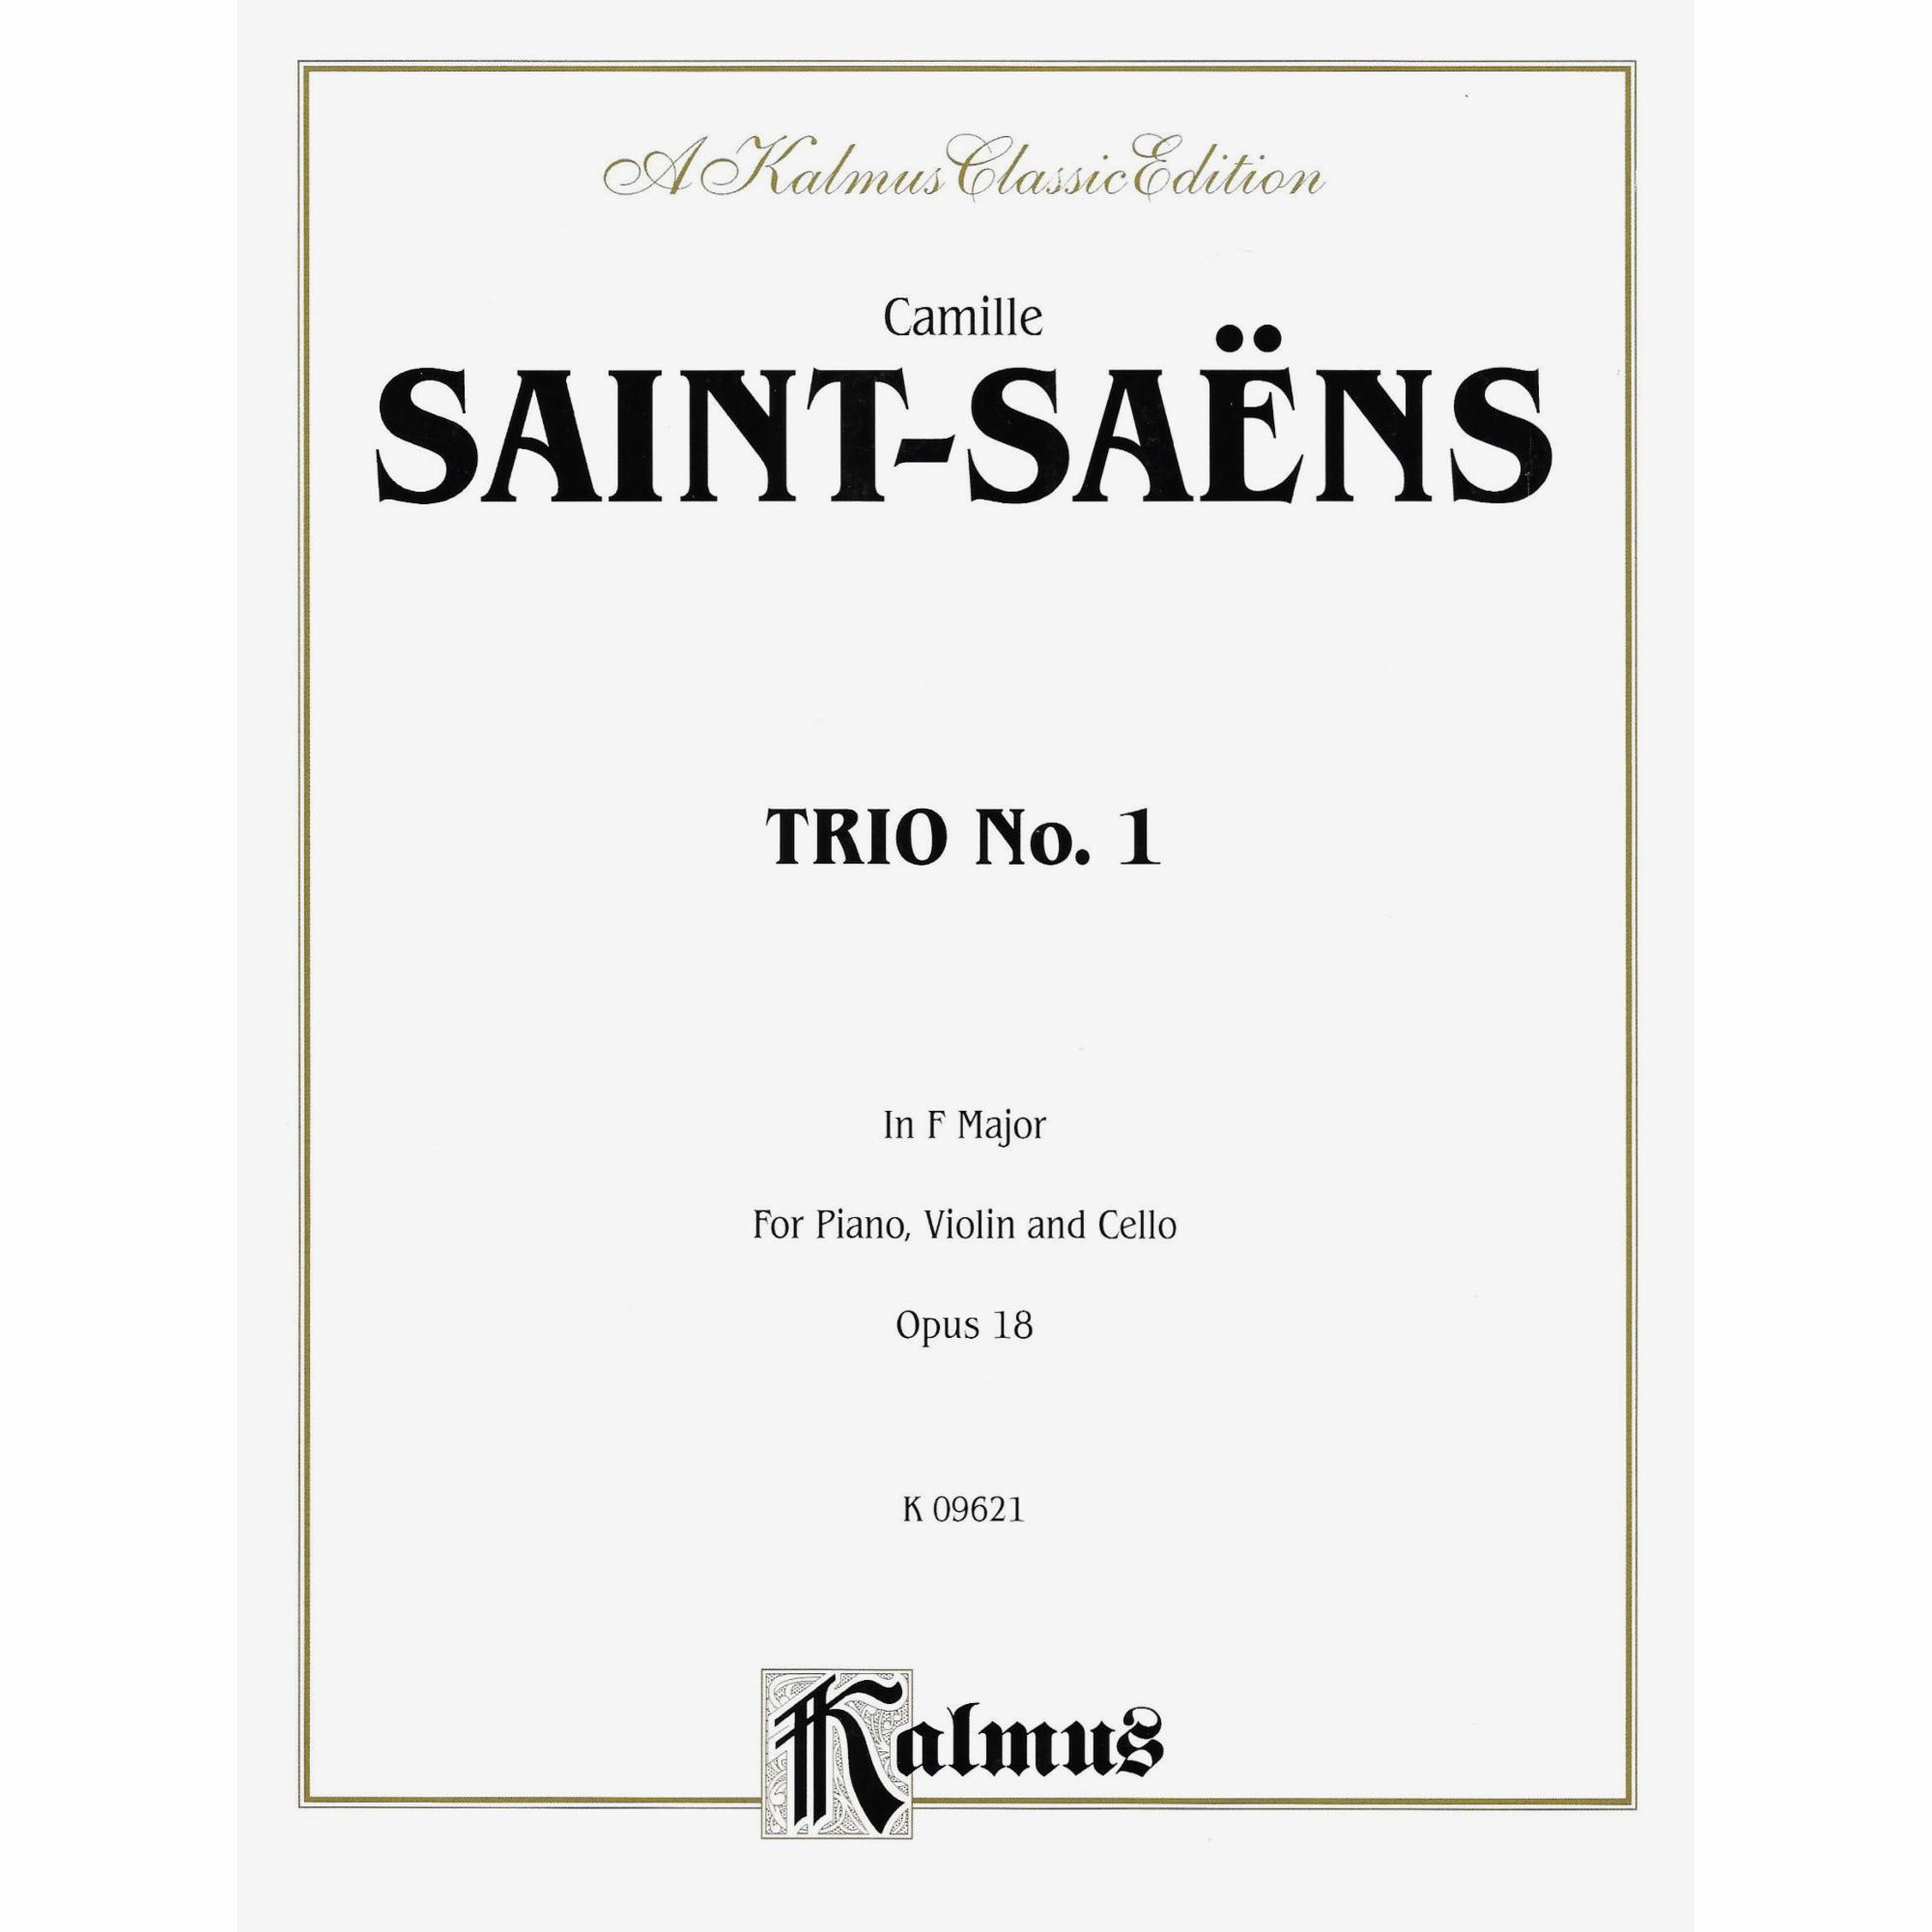 Saint-Saens -- Piano Trio No. 1 in F Major, Op. 18